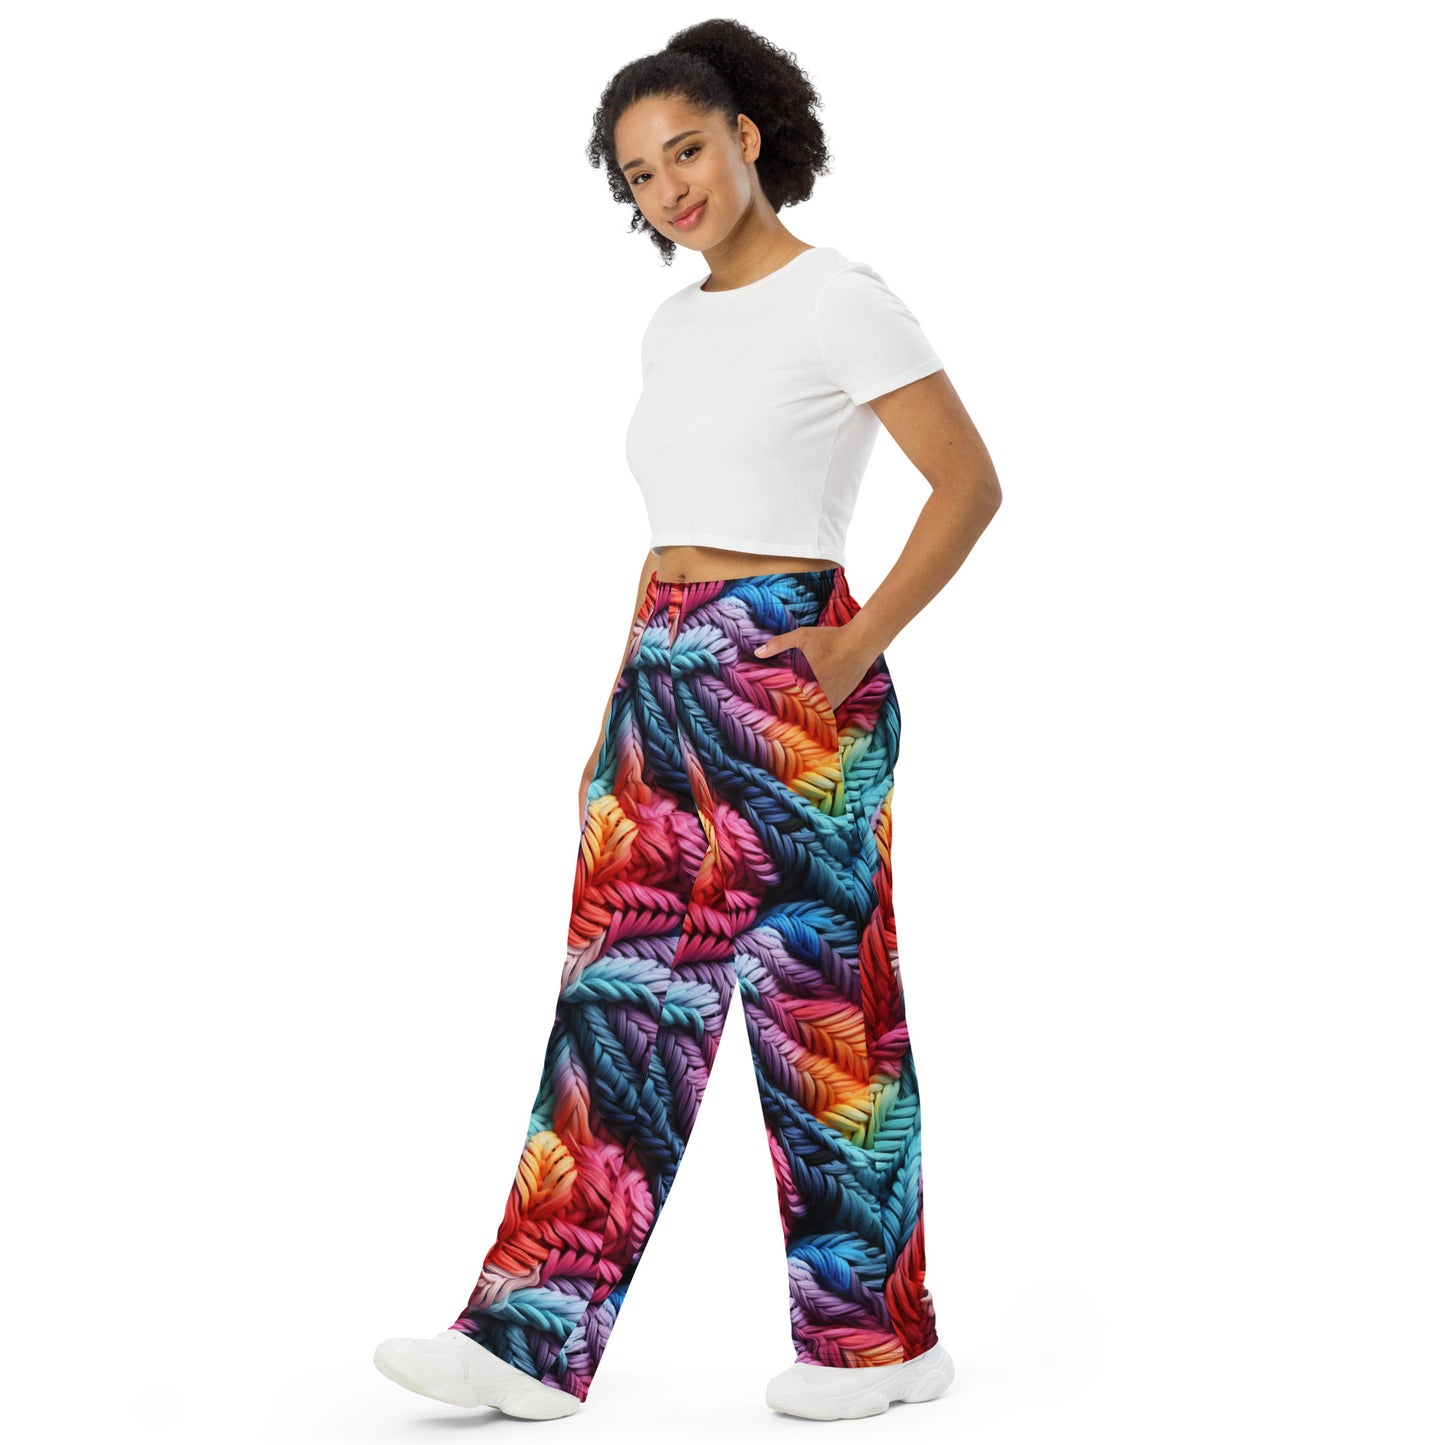 Colorful Lace Potpourri unisex wide-leg pants